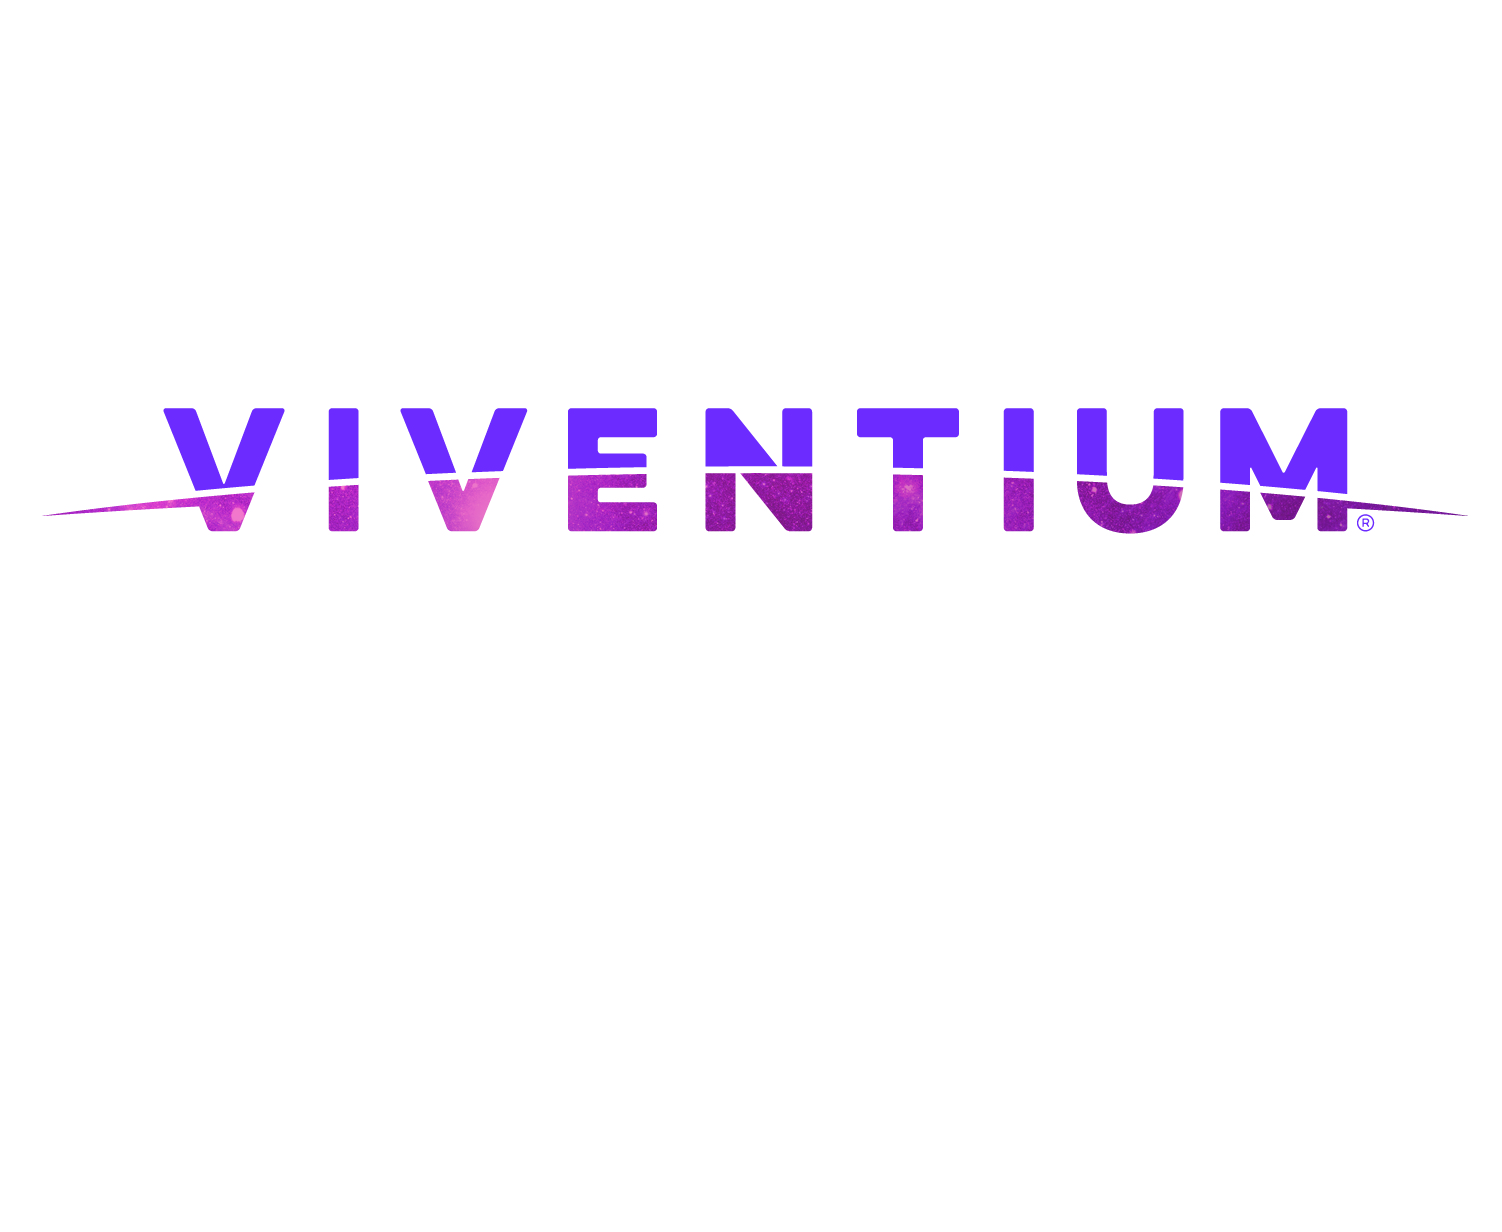 Viventium named “Hig